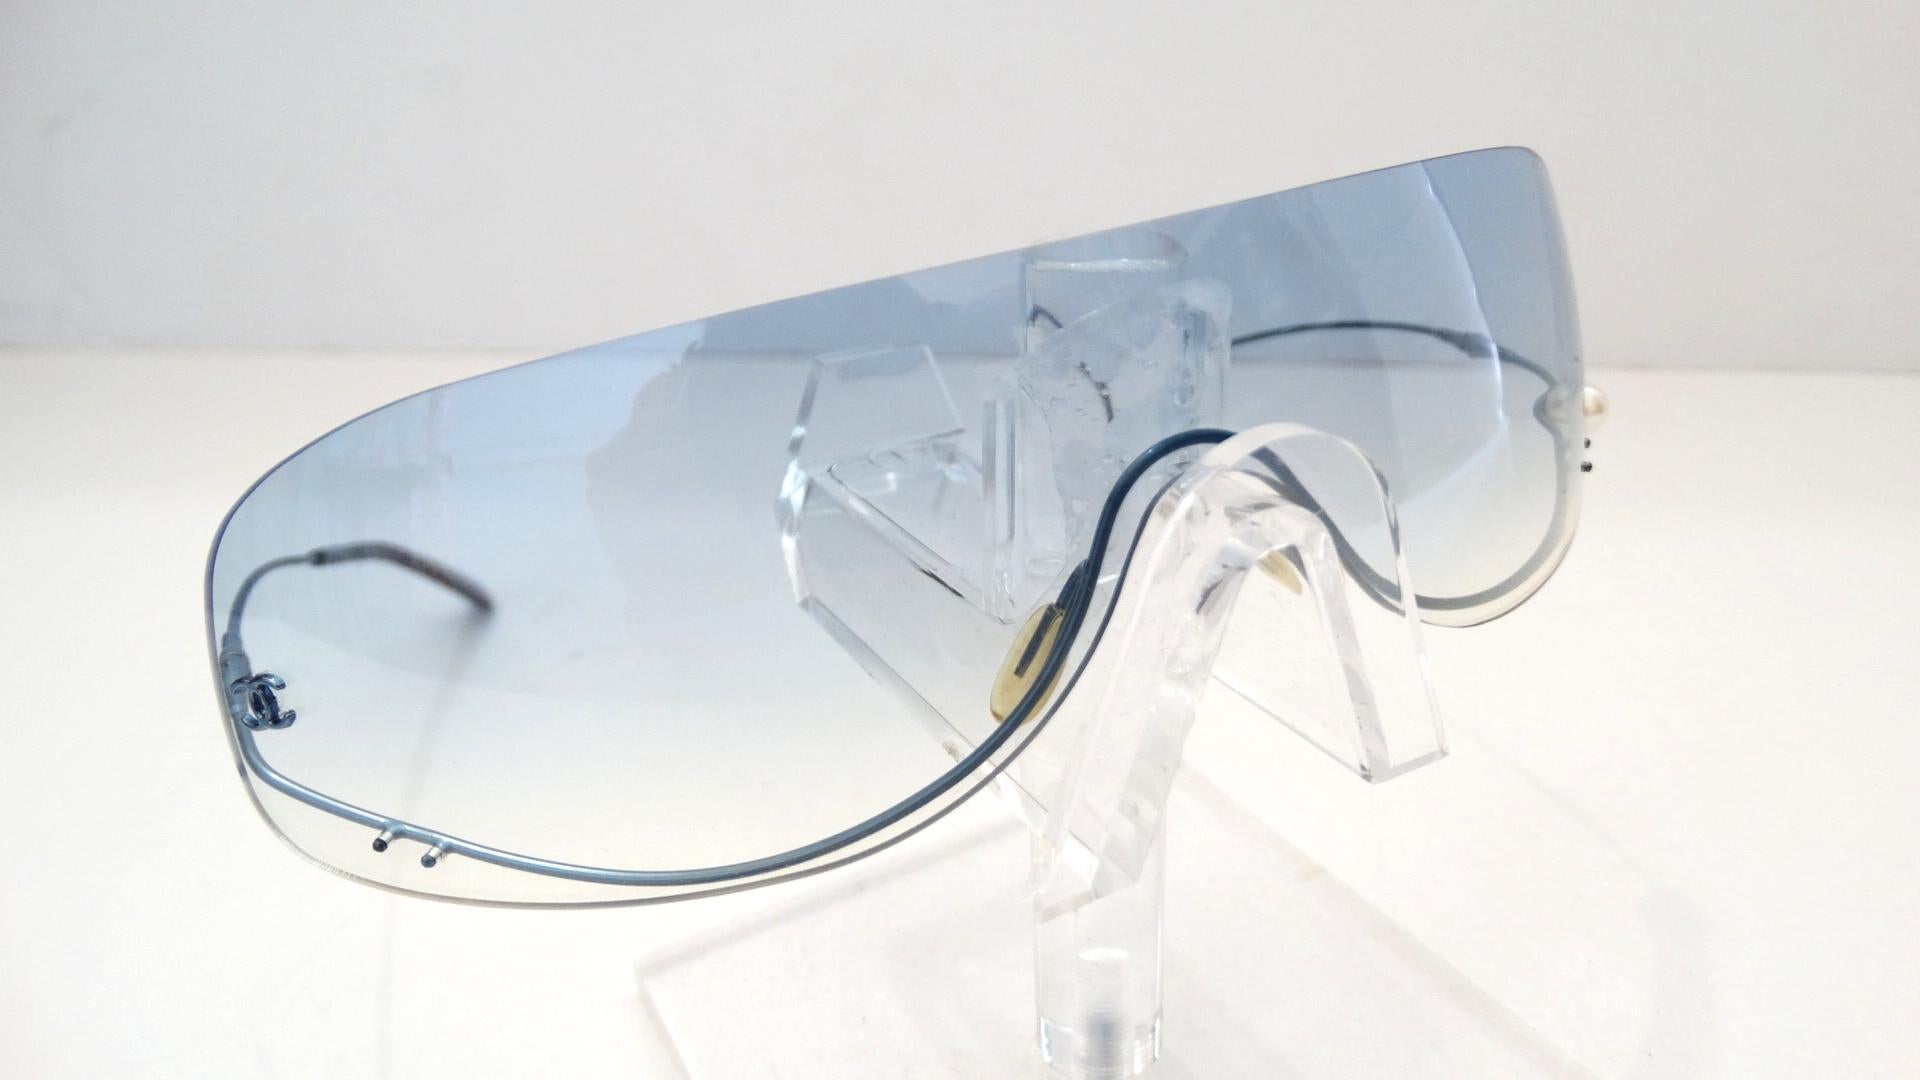 Die entzückendsten Chanel-Sonnenbrillen sind da! Diese randlosen Schild-Sonnenbrillen aus dem Lagerbestand von Chanel aus den 1990er Jahren verfügen über klare:: hellblau getönte Gläser mit einem subtilen Ombre-Effekt. Die leichten blauen Drahtbügel